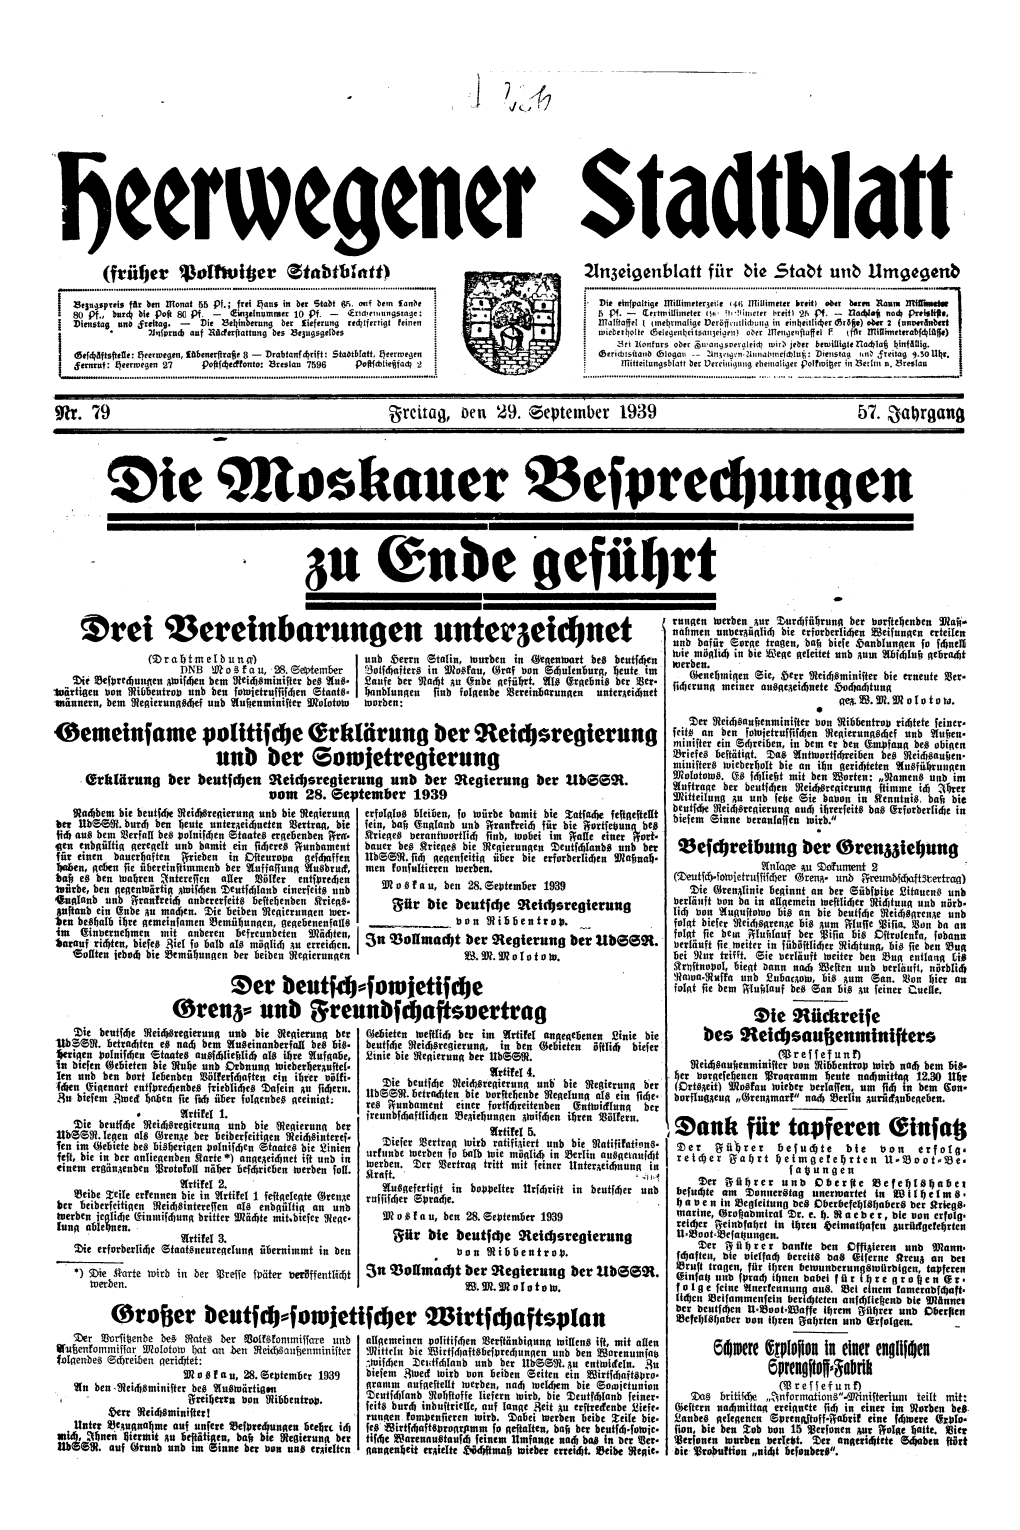 Heerwegener Stadtblatt (Früher Polkwitzer Stadtblatt) Anzeigenblatt Für Die Stadt Und Umgegend 1939 Jg. 57